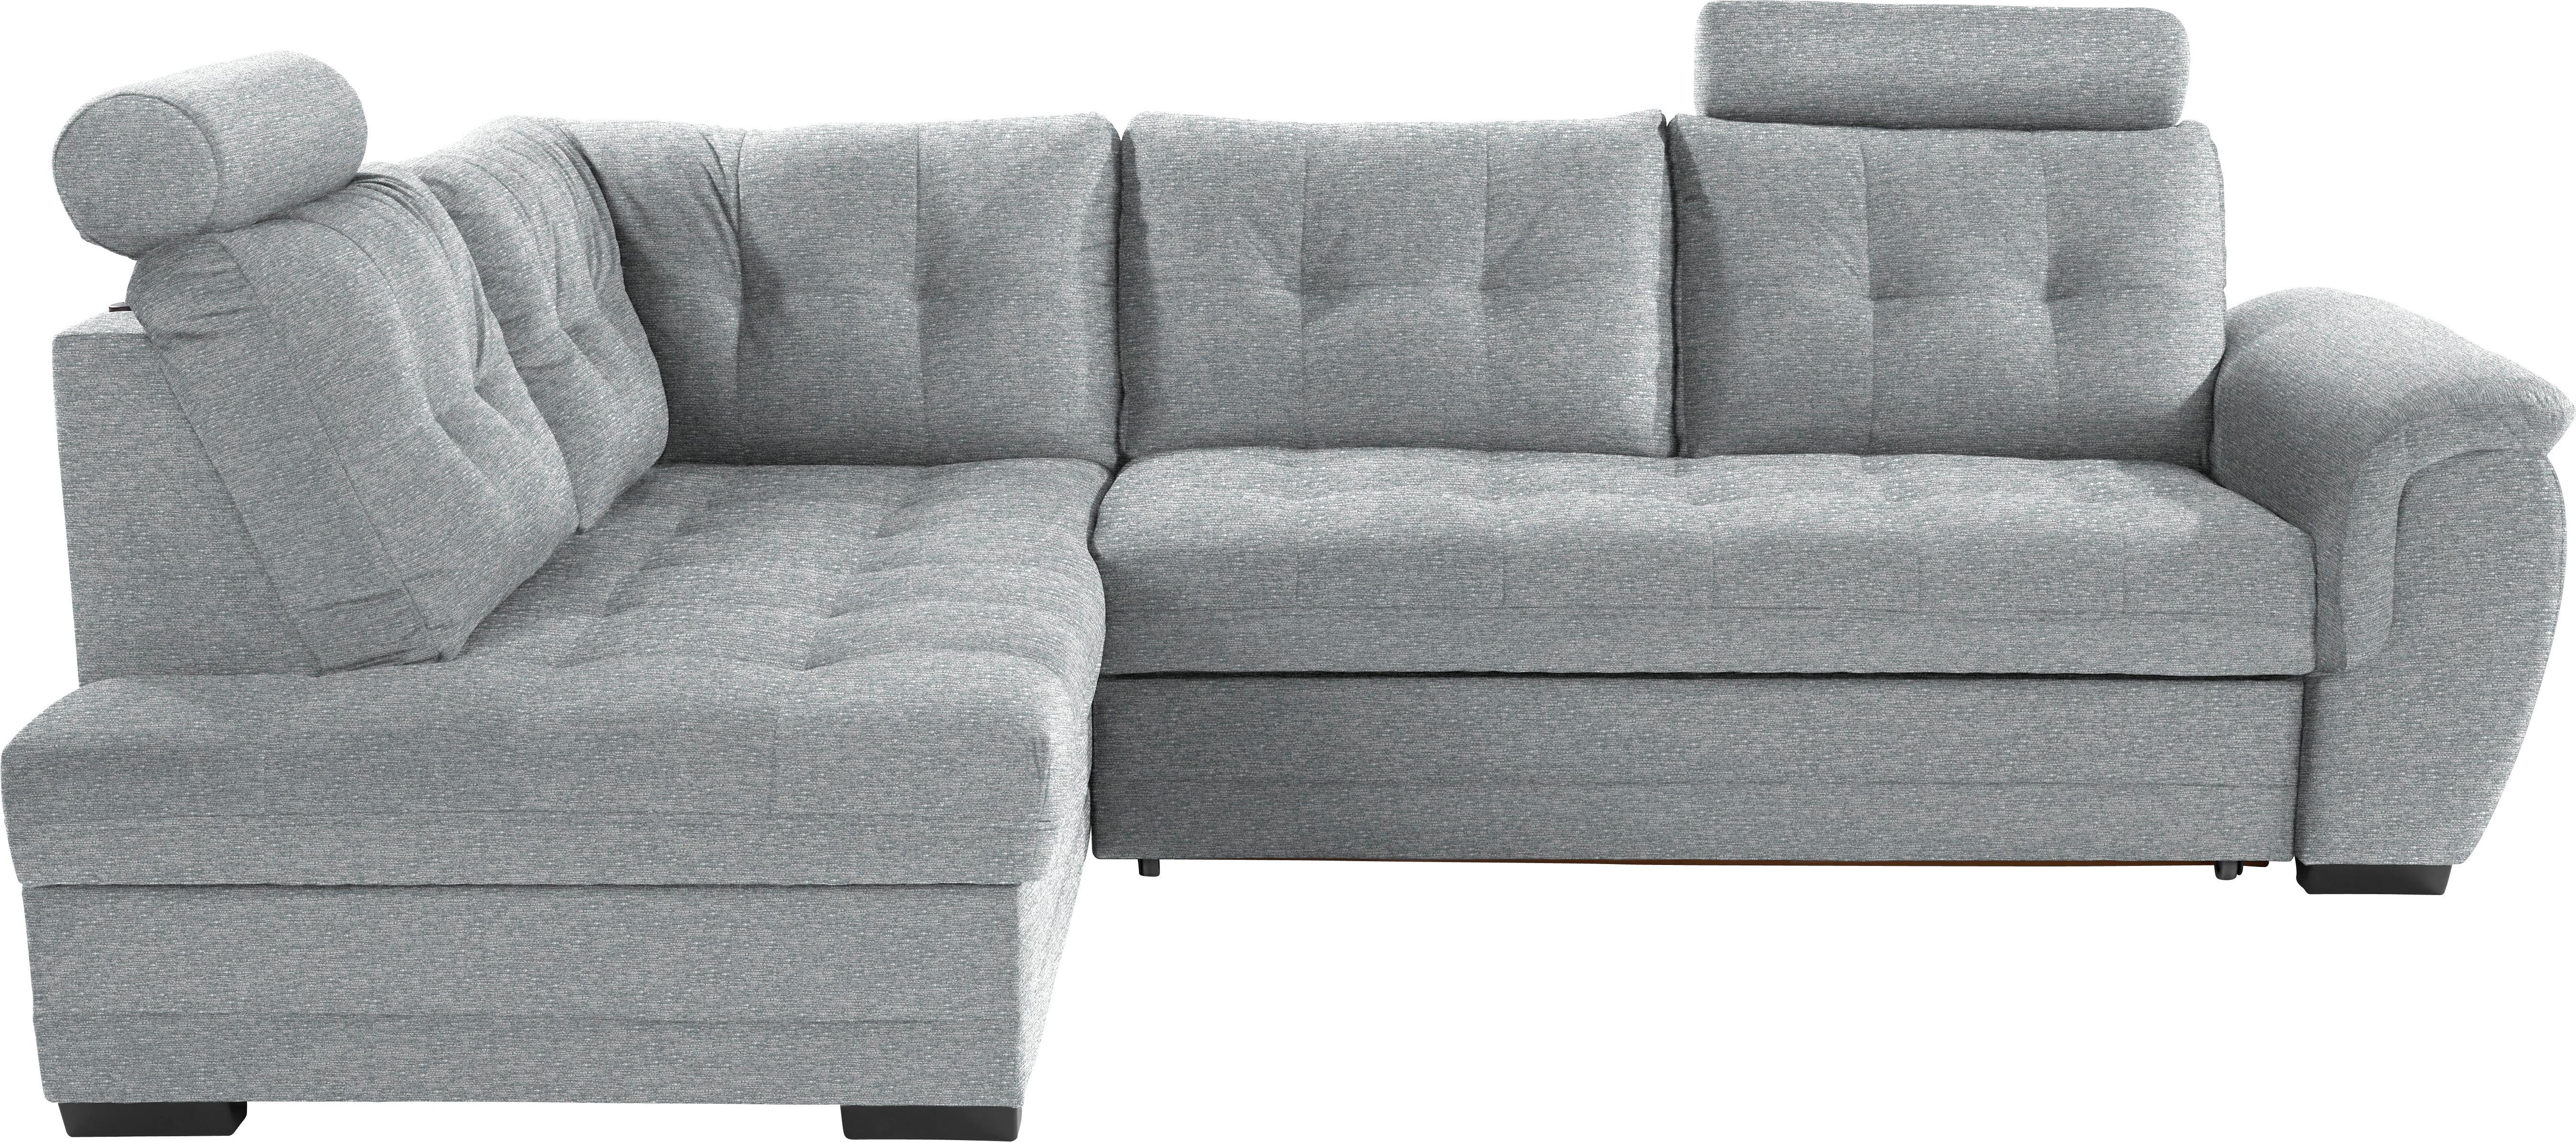 Sedežna Garnitura Falco, Z Ležiščem In Predalom - temno rjava/svetlo siva, Konvencionalno, umetna masa/tekstil (183/251cm) - Modern Living